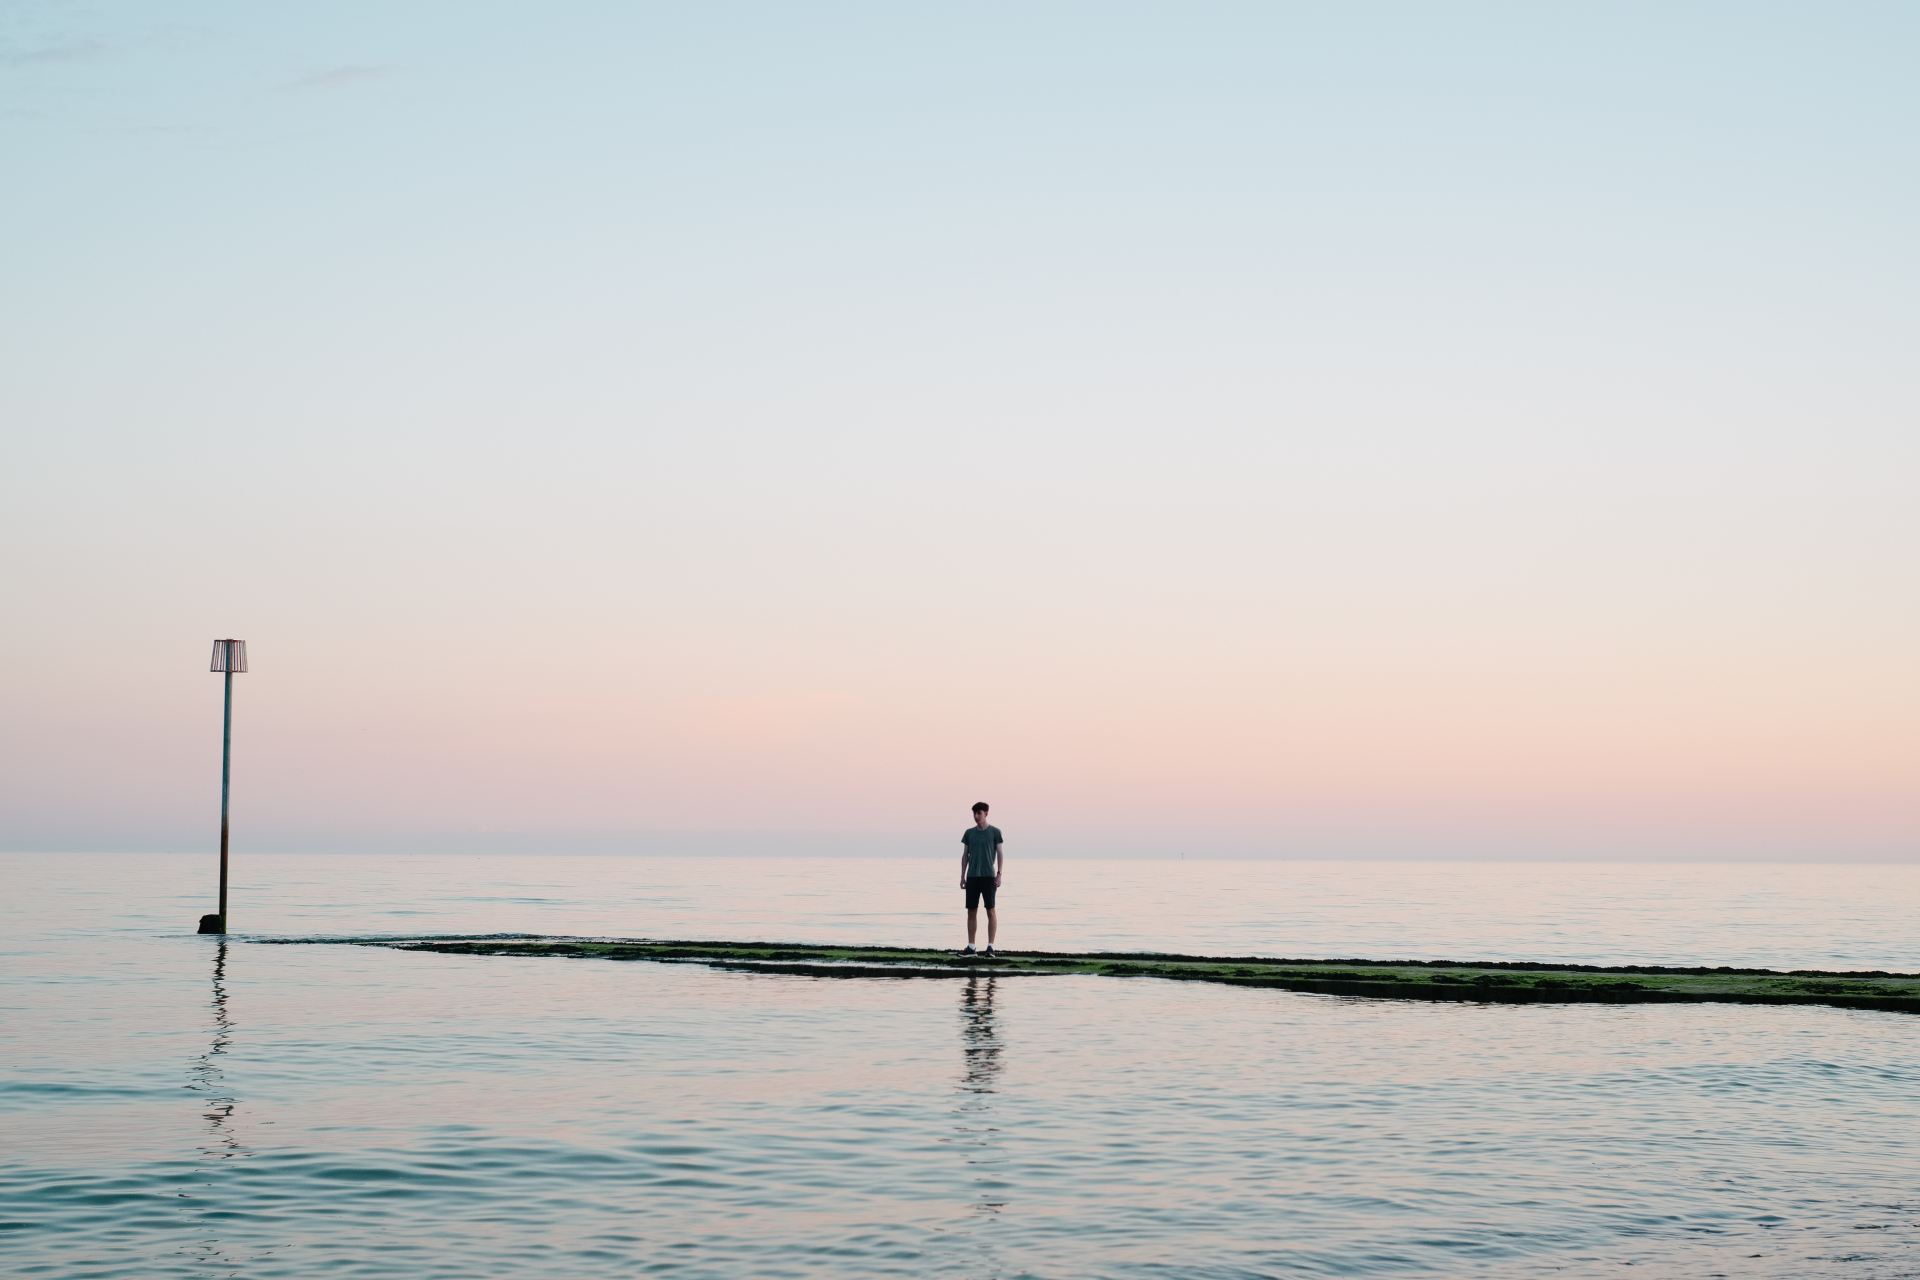 man standing on dock between body of water